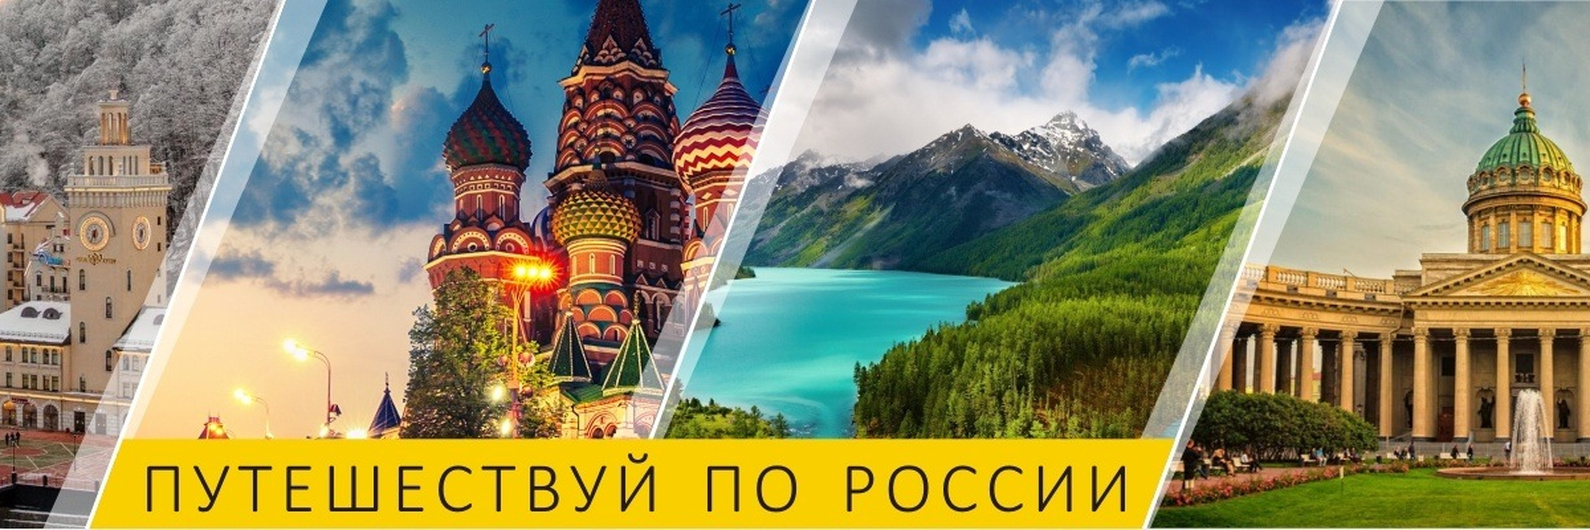 Реклама путешествий по России